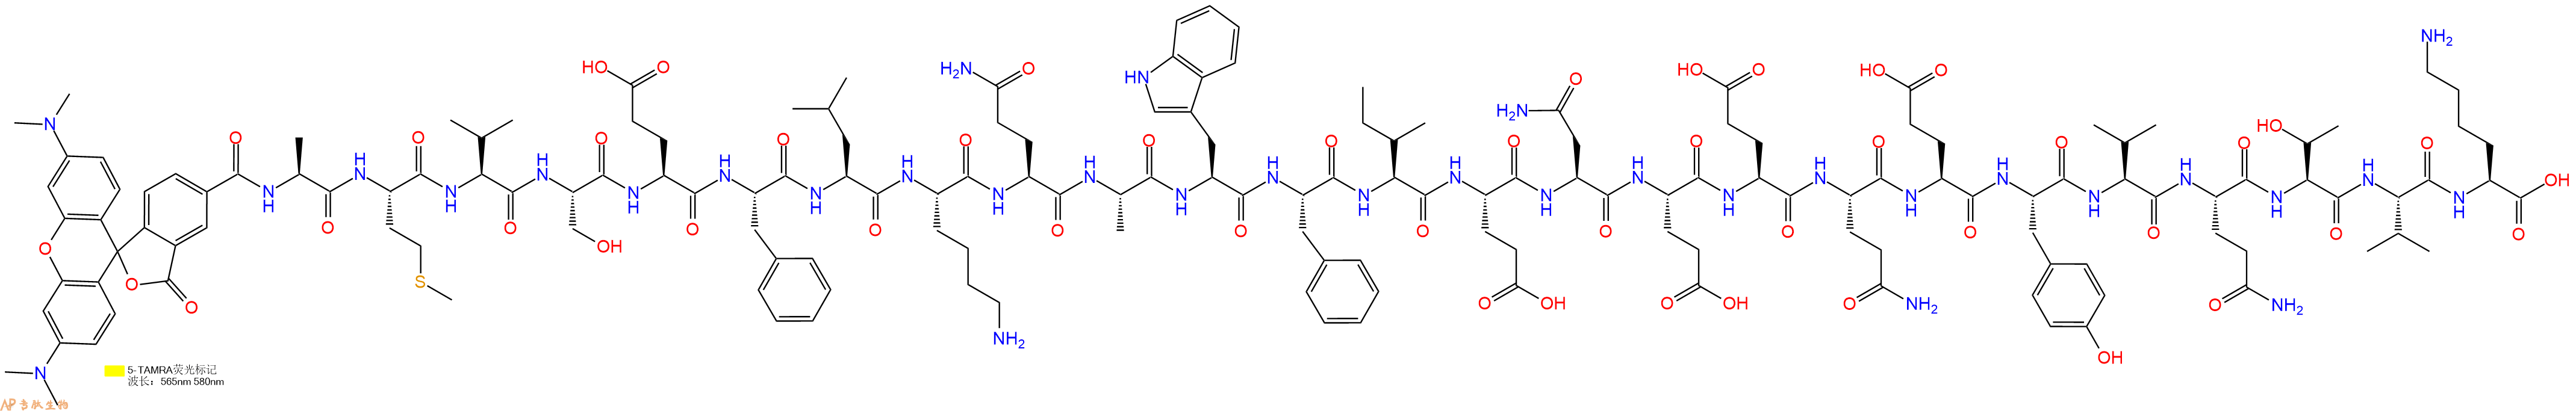 专肽生物产品5TAMRA-Ala-Met-Val-Ser-Glu-Phe-Leu-Lys-Gln-Ala-Trp